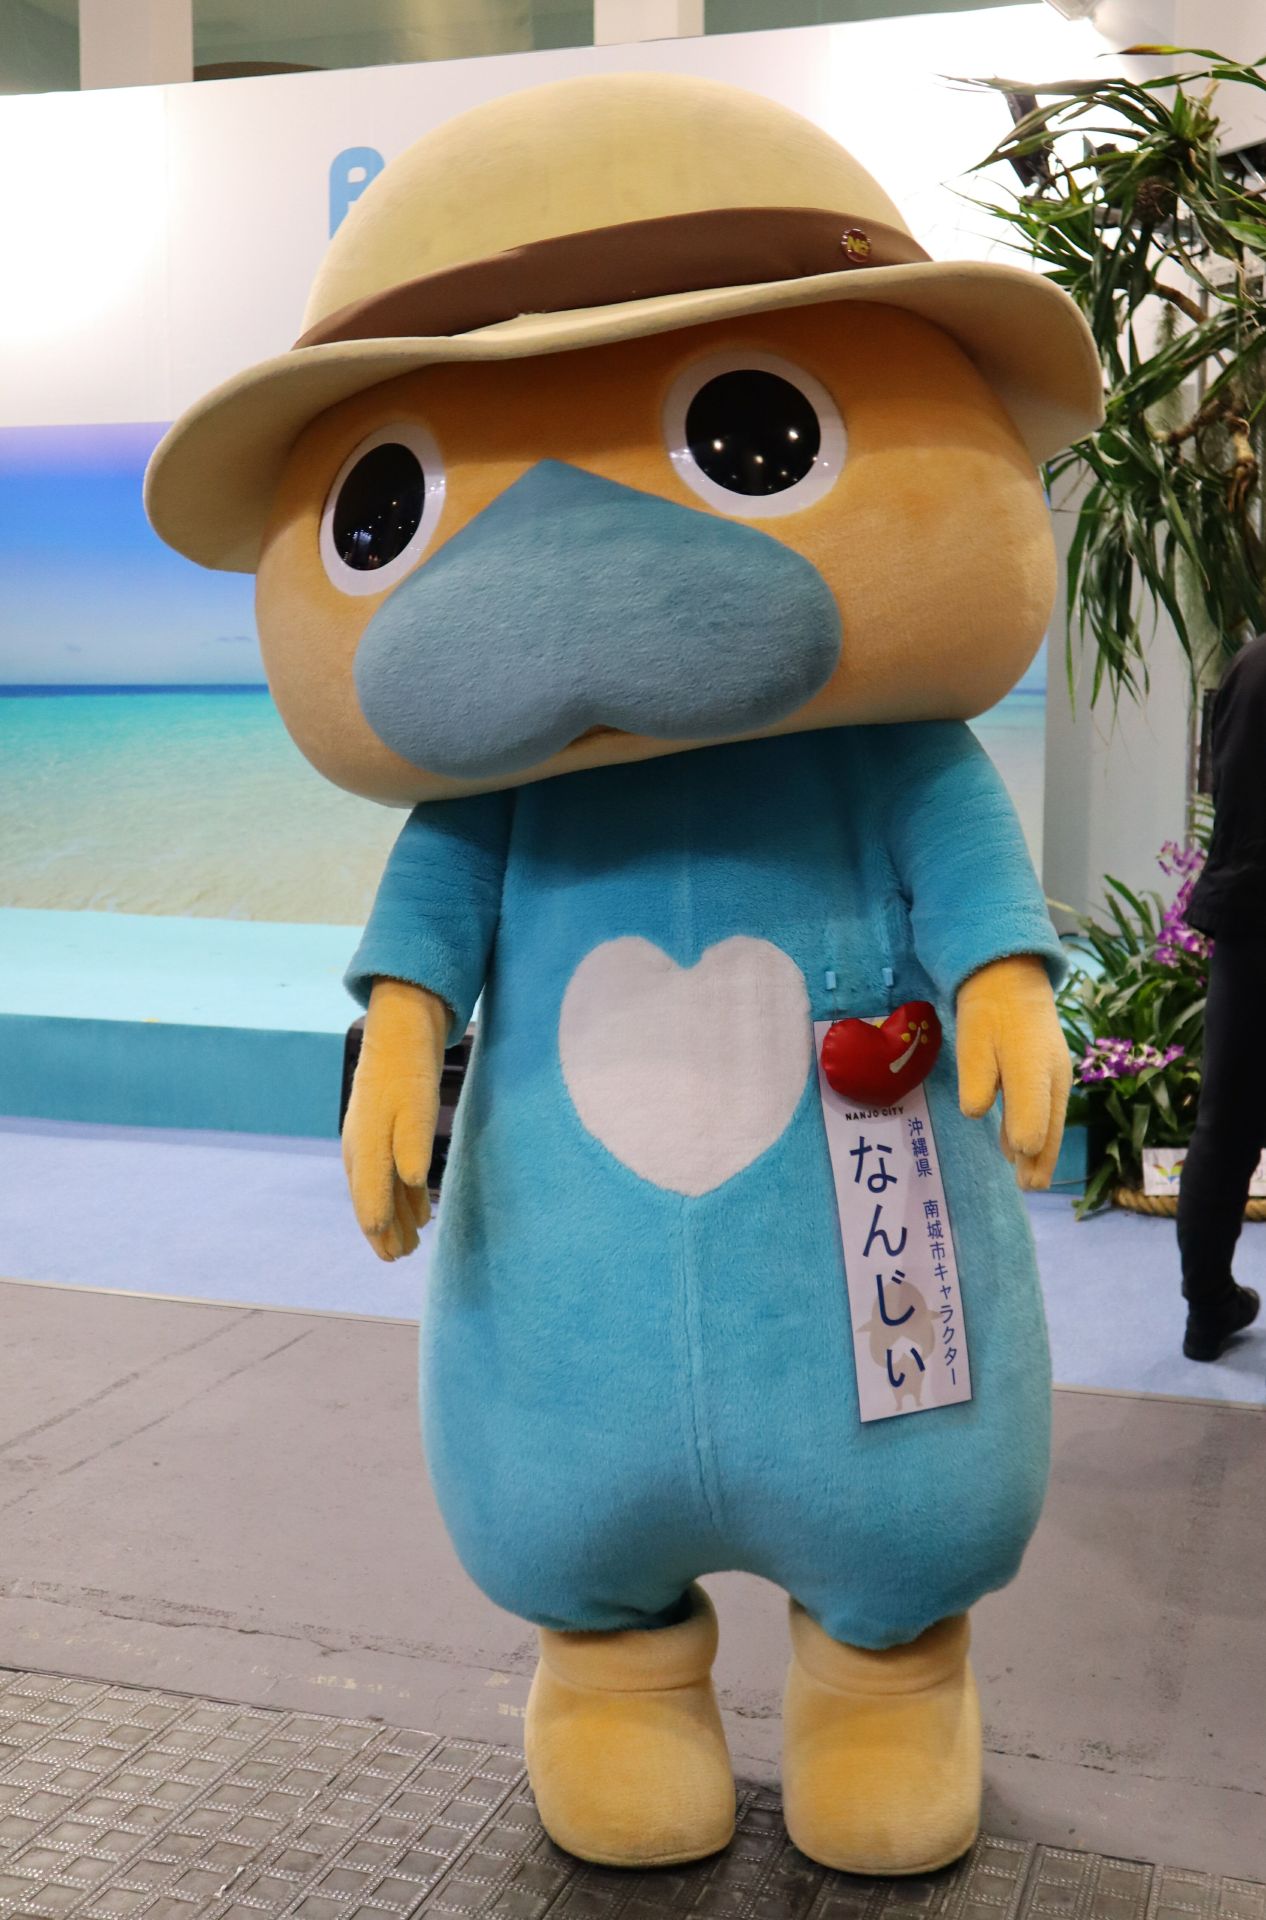 Japanese Mascot Photograph Yuruchara Jp ゆるキャラ なんじぃ 沖縄県南城市 沖縄 本島の南部に位置する南城市のマスコットキャラ